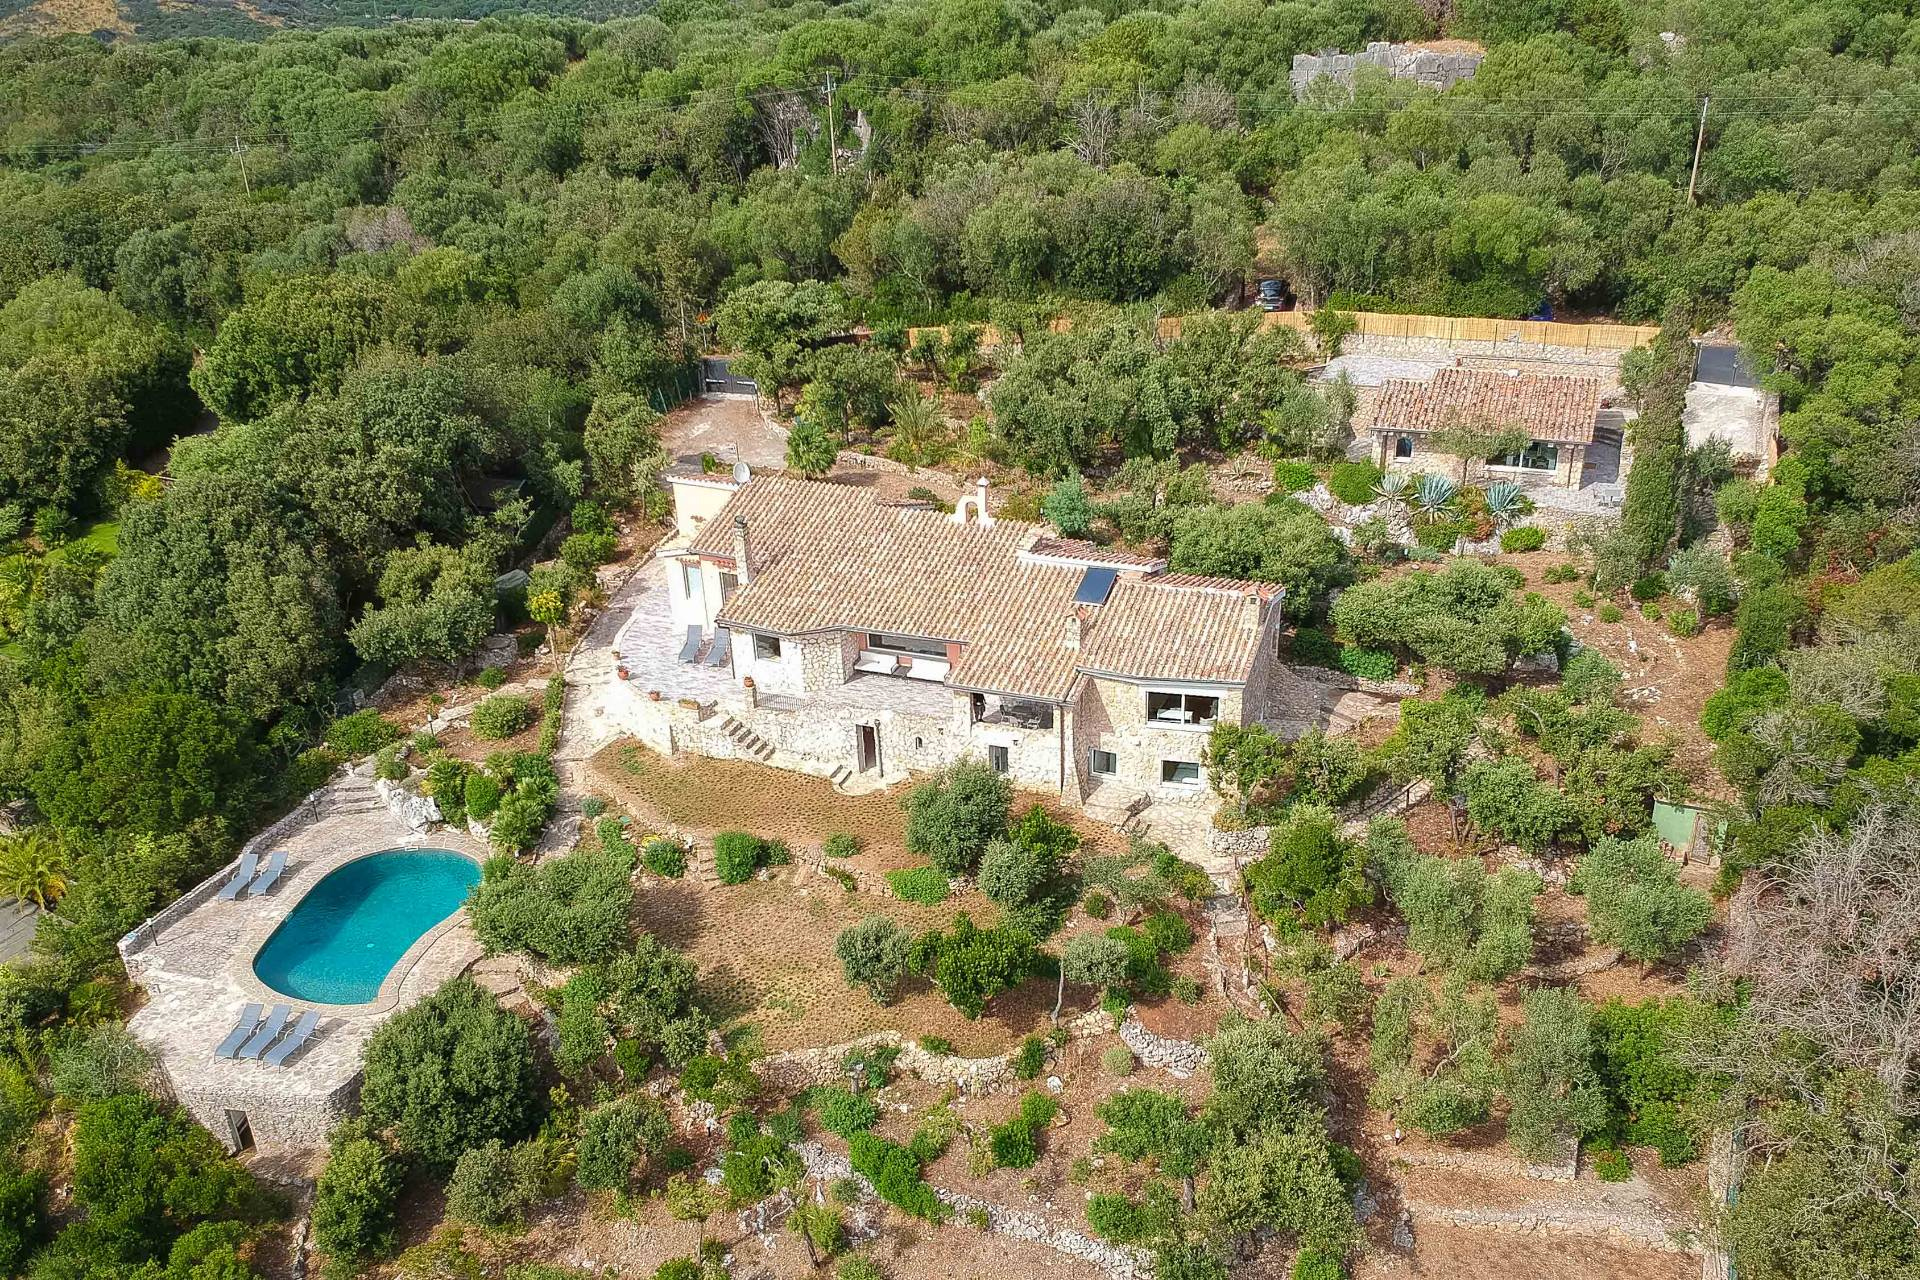 Villa in affitto a Orbetello, 11 locali, zona Zona: Ansedonia, prezzo € 40.000 | CambioCasa.it